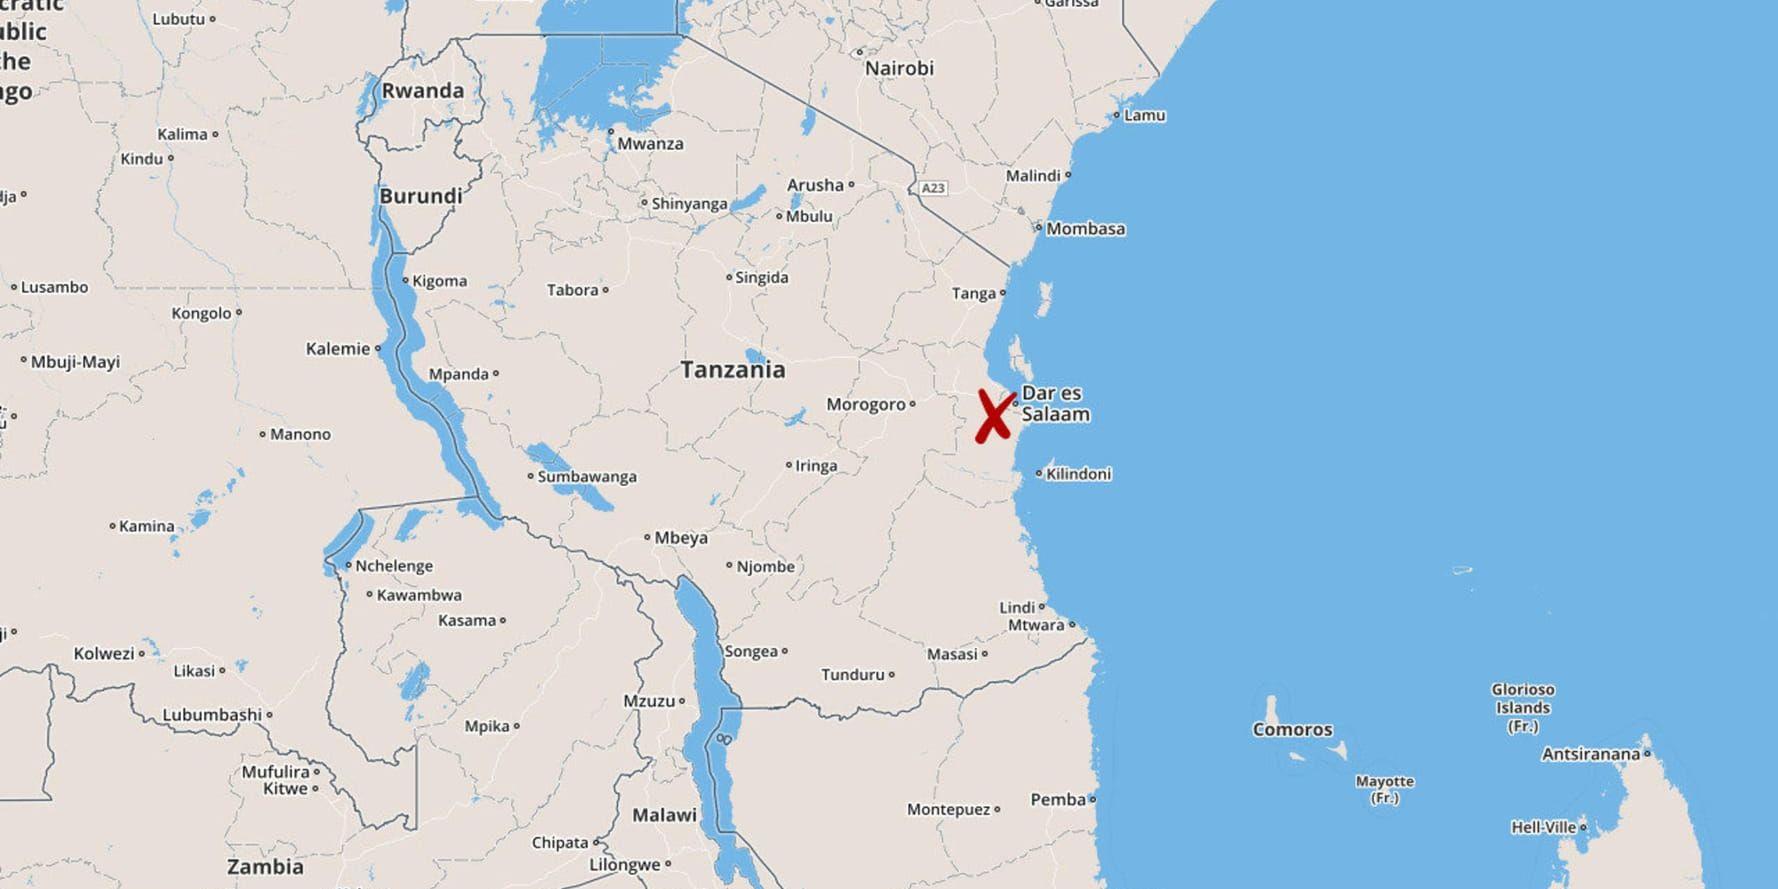 En man i 60-årsåldern från Göteborg har hittats död i Tanzanias huvudstad Dar es-Salaam.